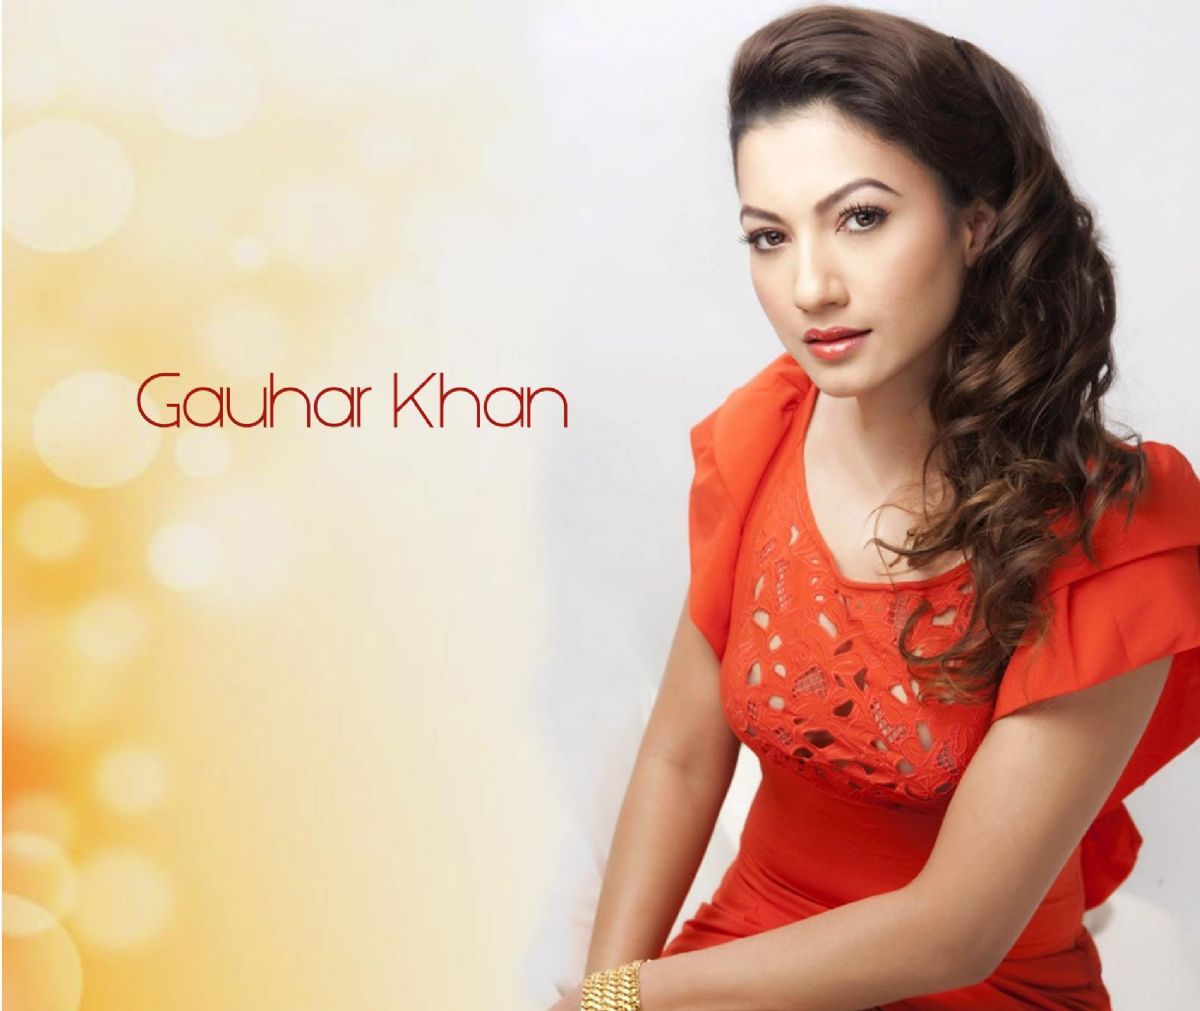 Who is Gauhar Khan dating? Gauhar Khan boyfriend, husband